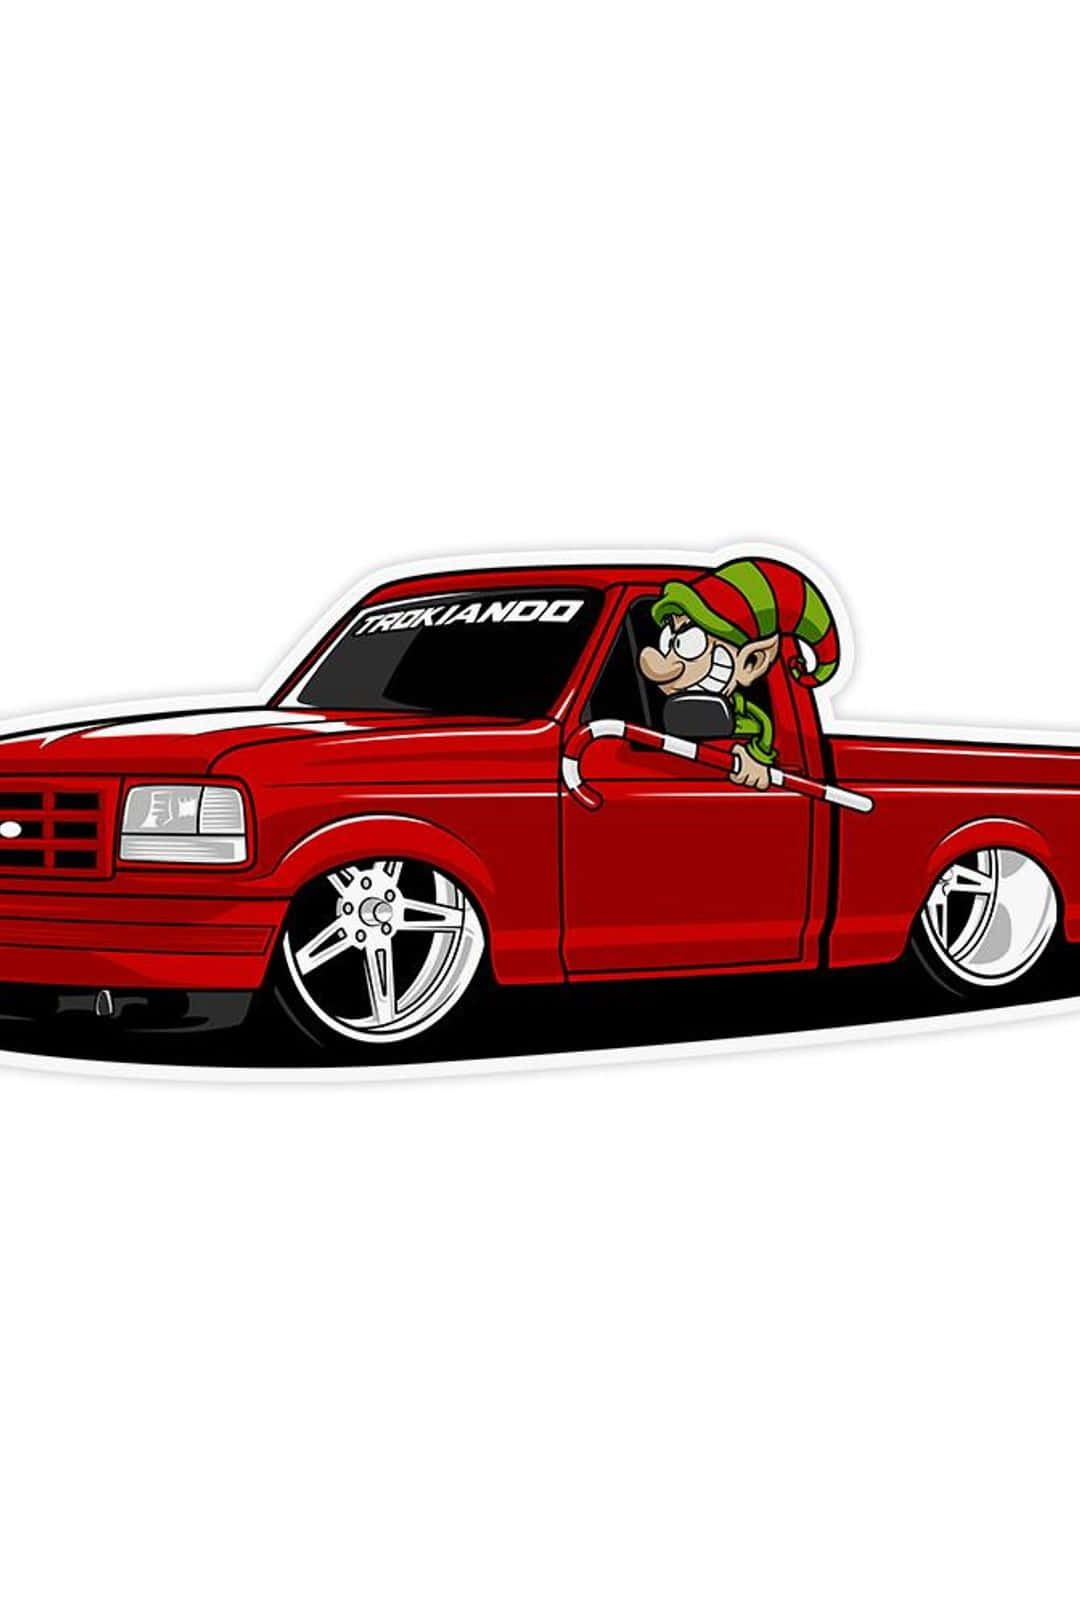 Custom Red Truck Cartoon Elf Wallpaper